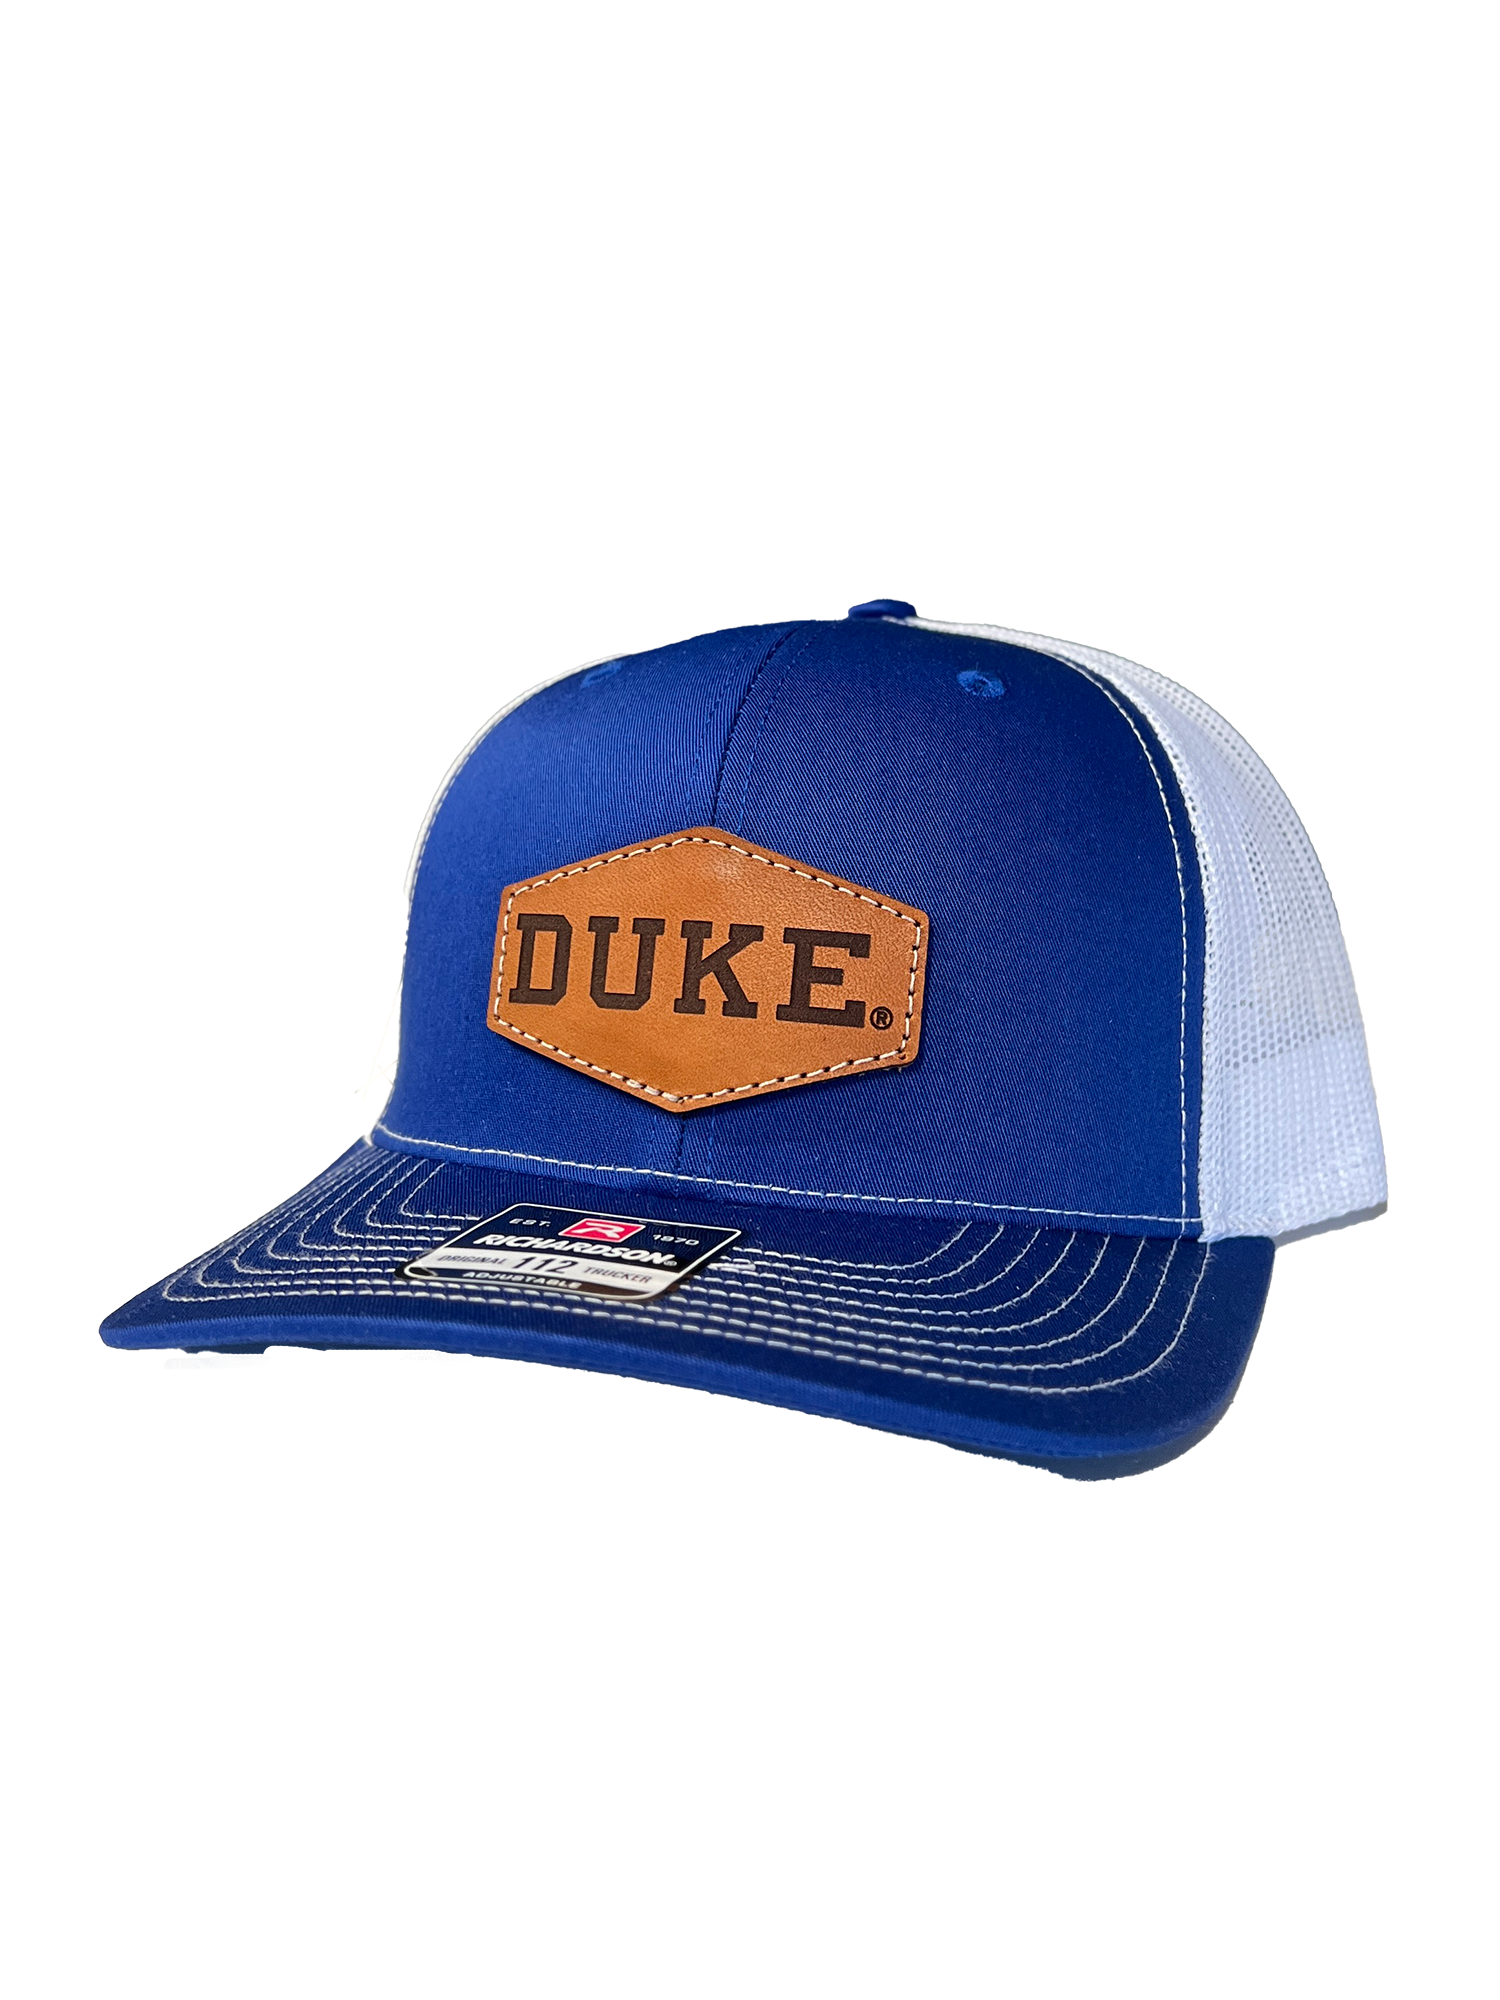 Duke Blue Devils Leather Patch Trucker Hat-(Duke) Royal/White